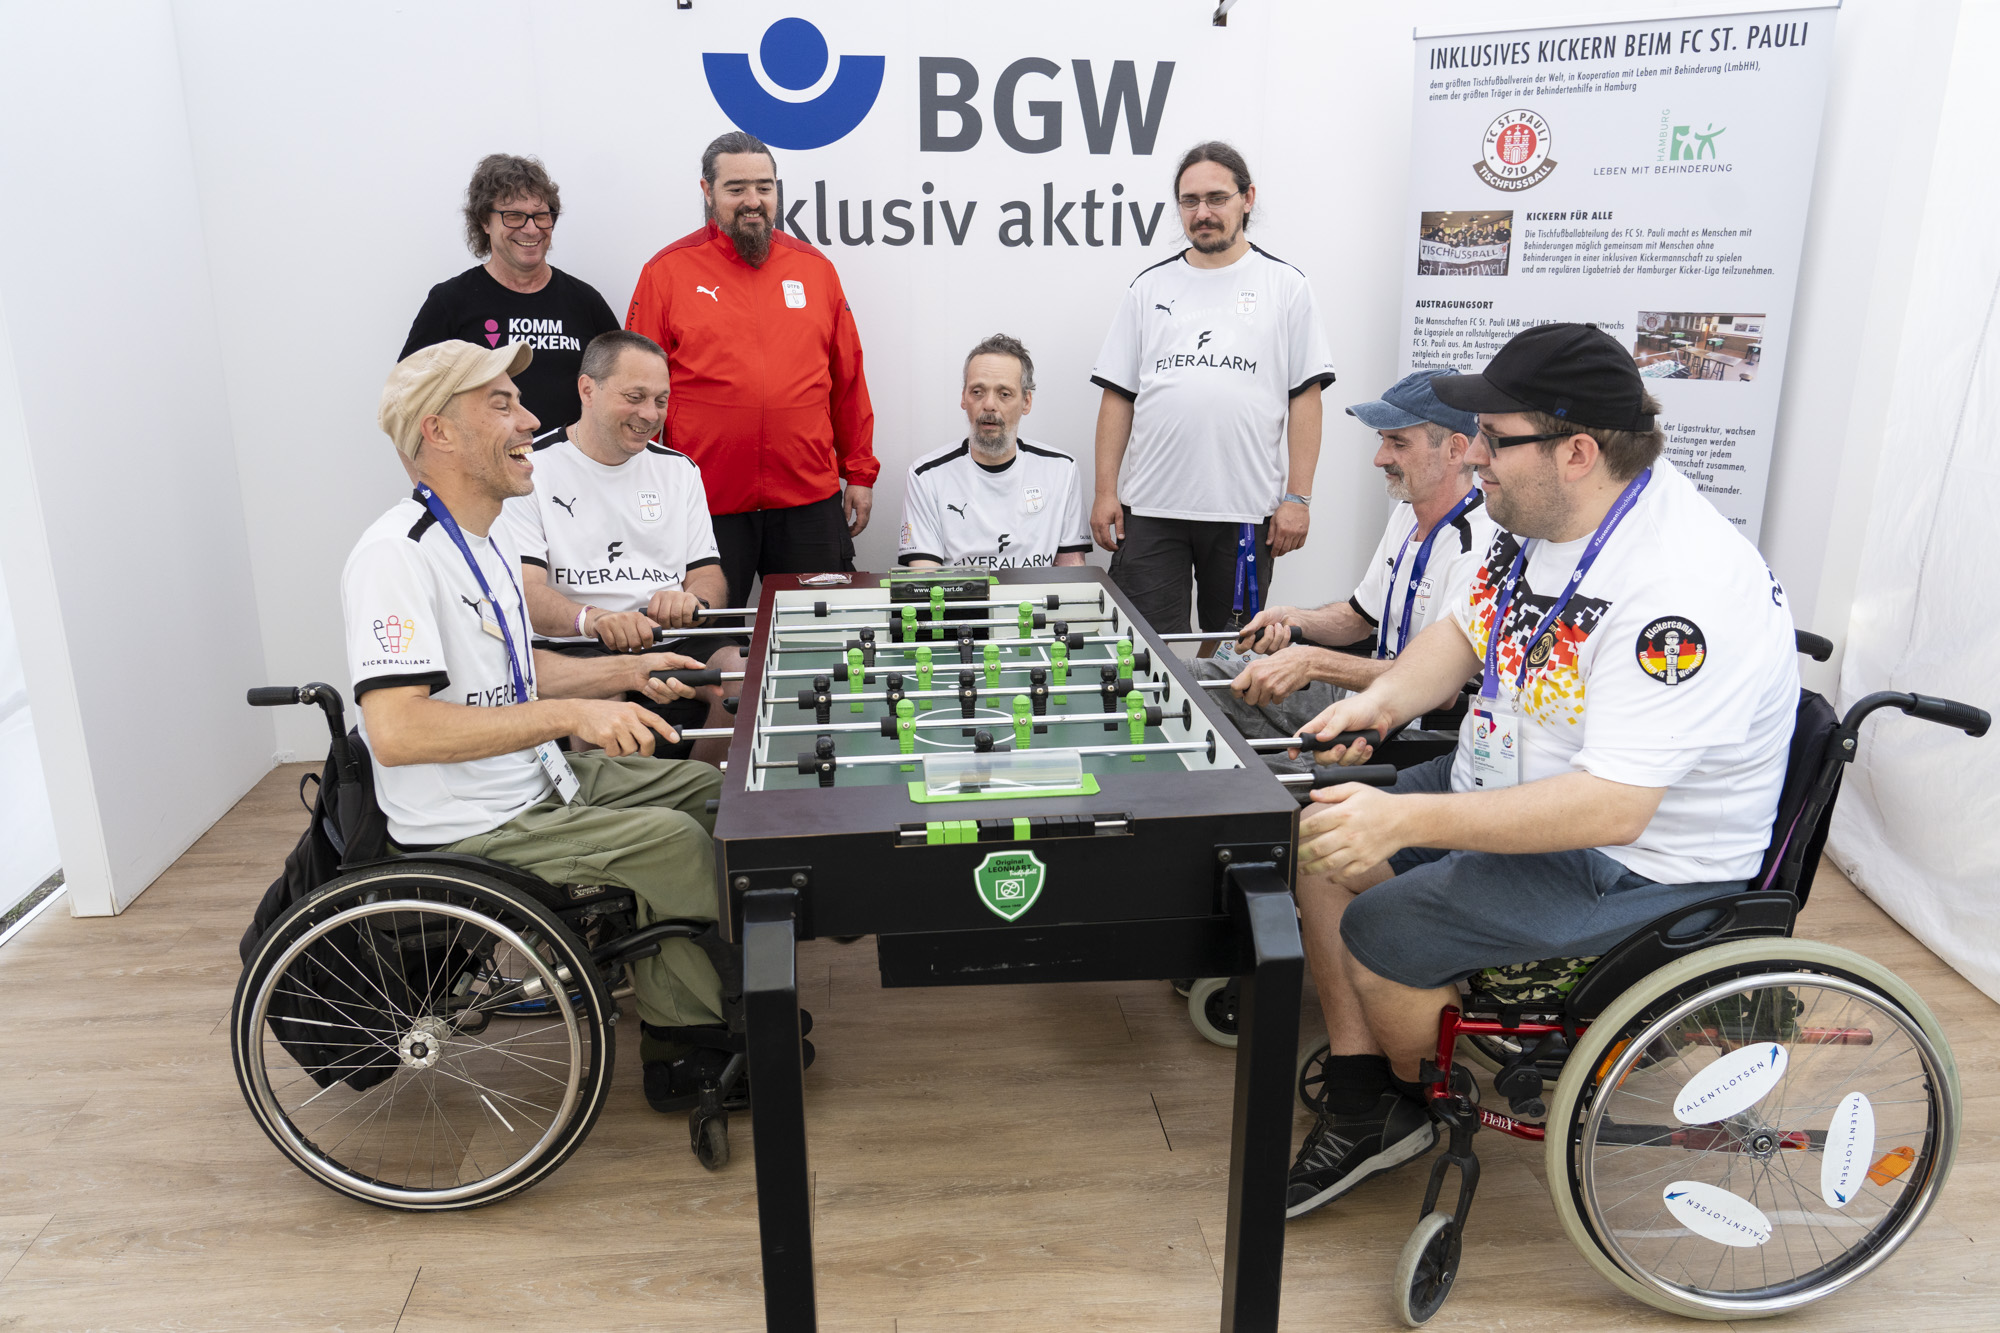 Vier Männer im Rollstuhl spielen an einem Tischfußball-Tisch. Im Hintergrund 4 weitere Männer in Trikots und eine Infotafel "Inklusives Kickern beim FC St. Pauli". An der Wand daneben der Schriftzug "BGW inklusiv aktiv"